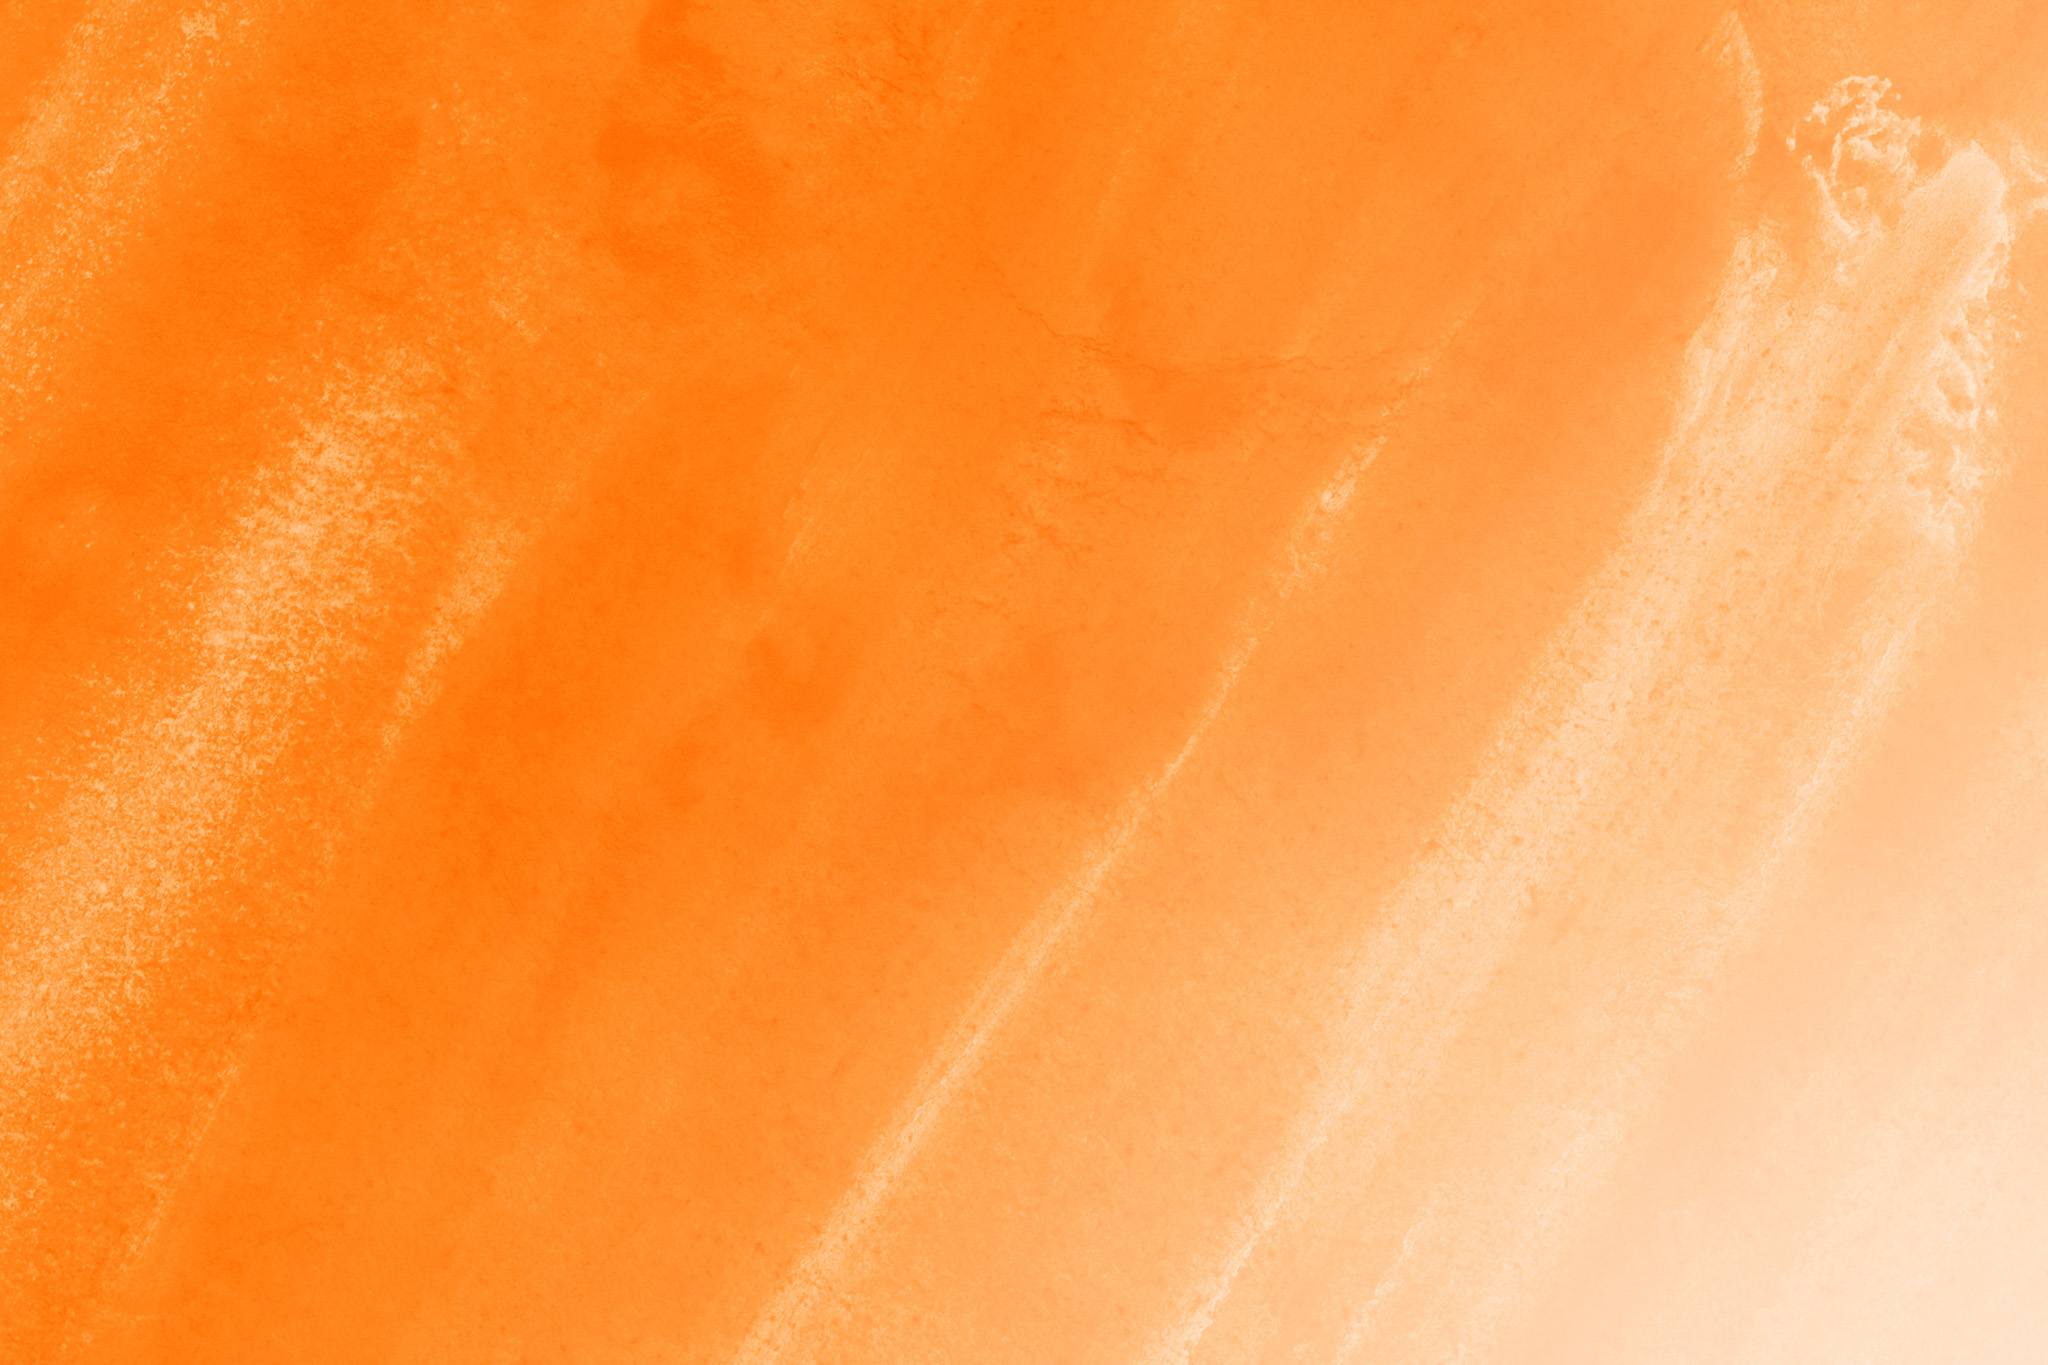 オレンジのグラデーションのテクスチャ壁紙 の画像素材を無料ダウンロード 1 背景フリー素材 Beiz Images